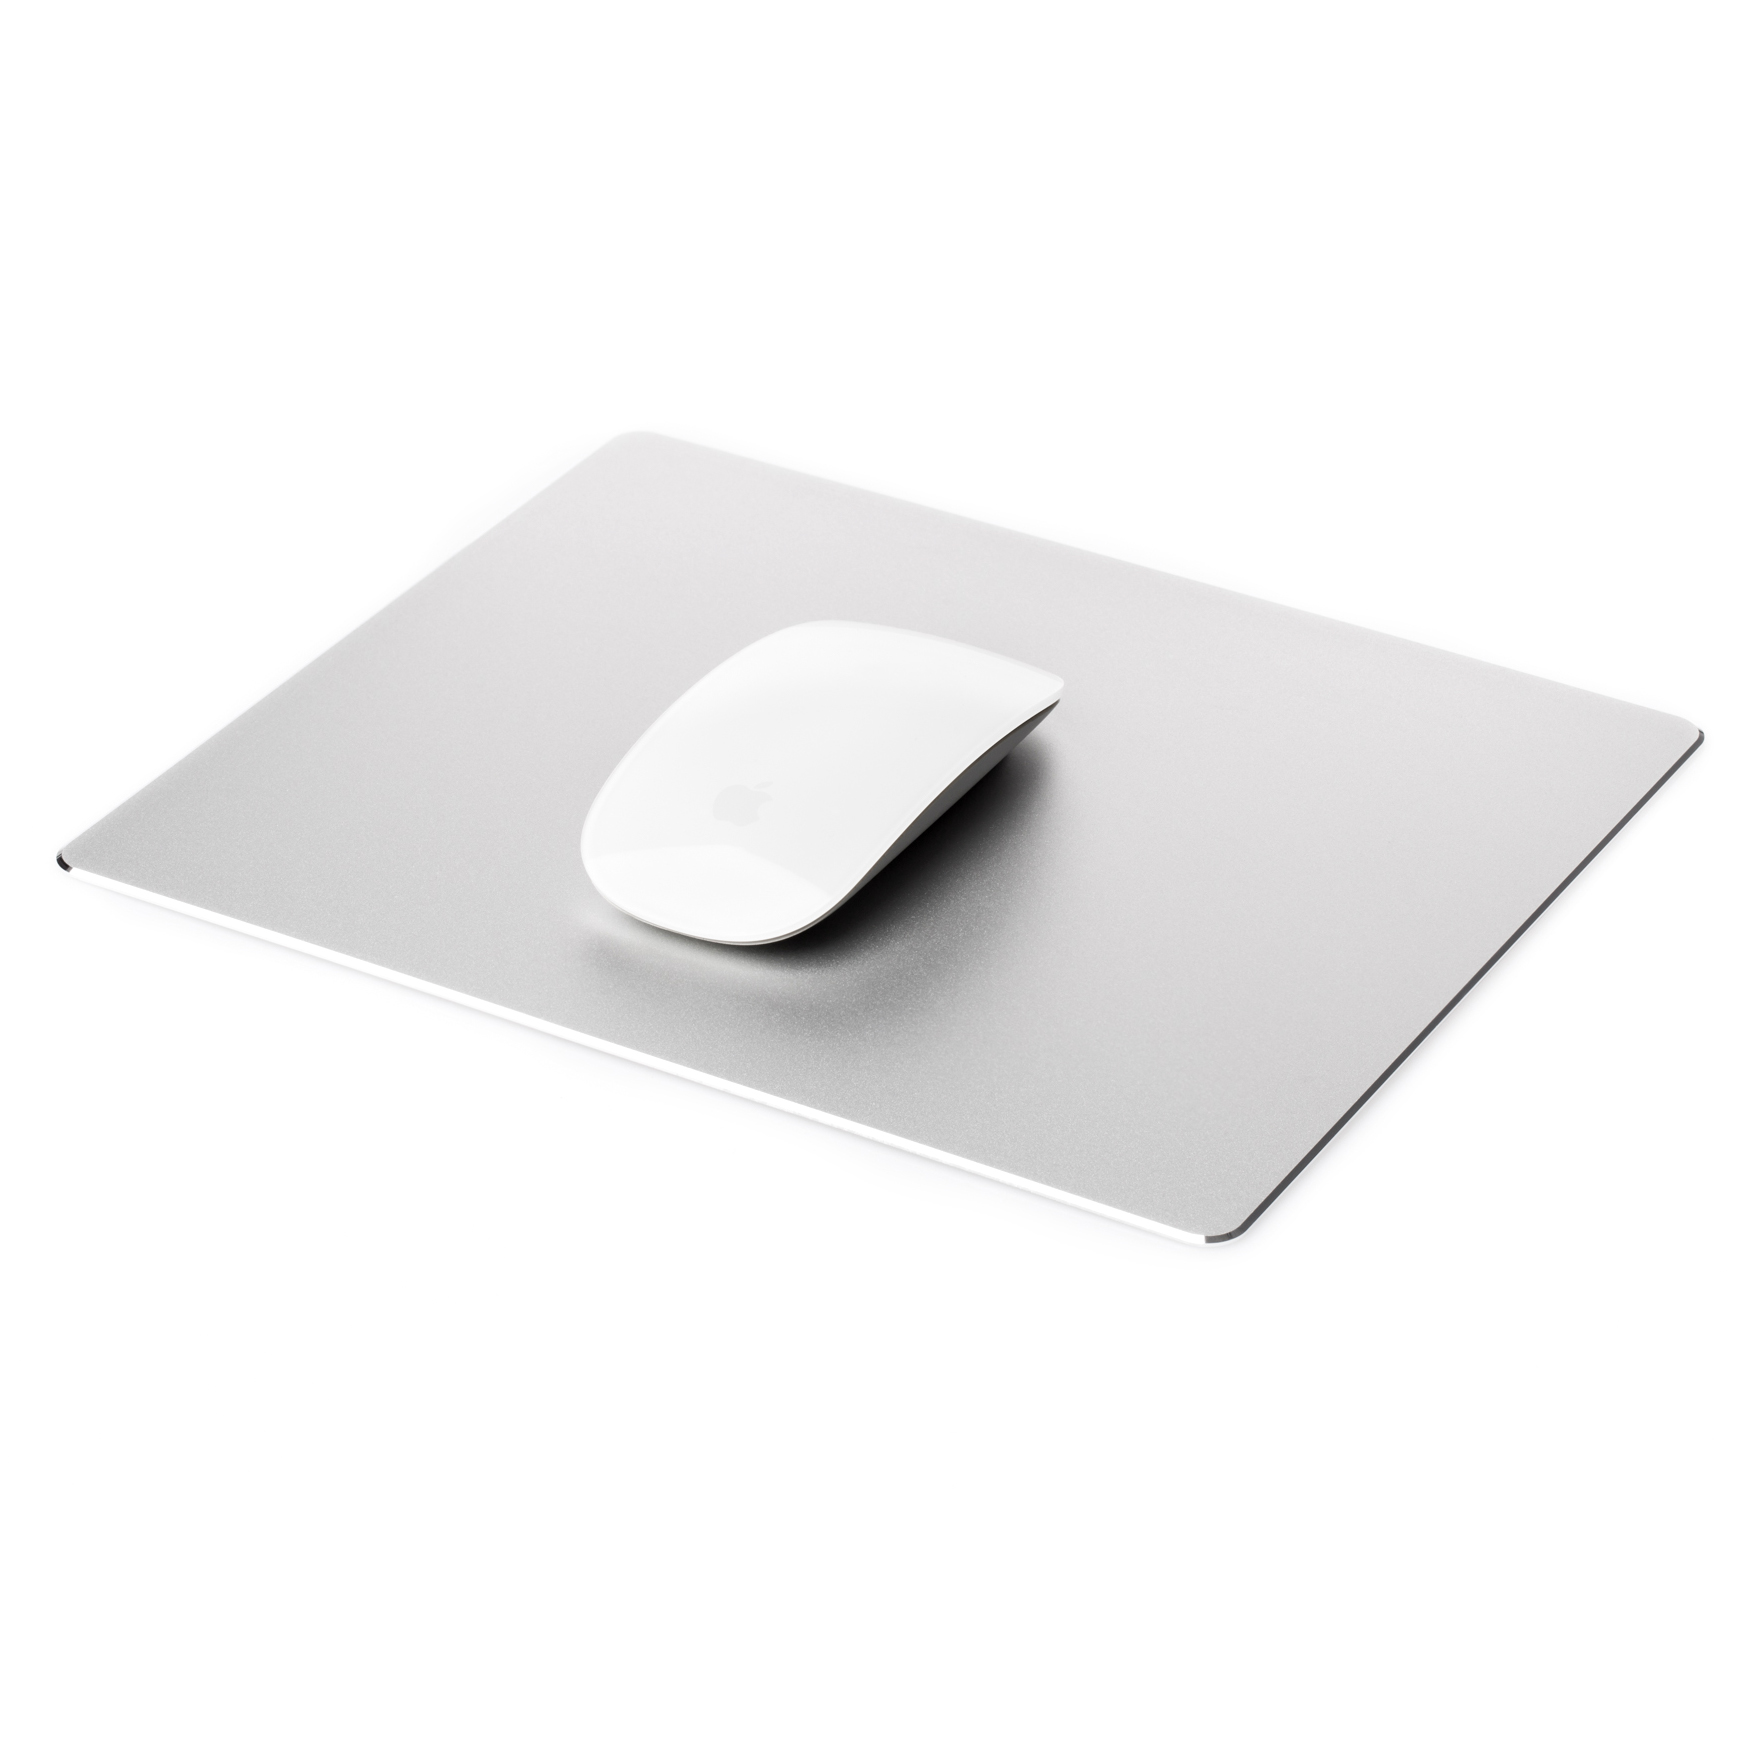 DESIRE2 Aluminium Rectangular Mouse Pad  Rectangular Mouse Pad